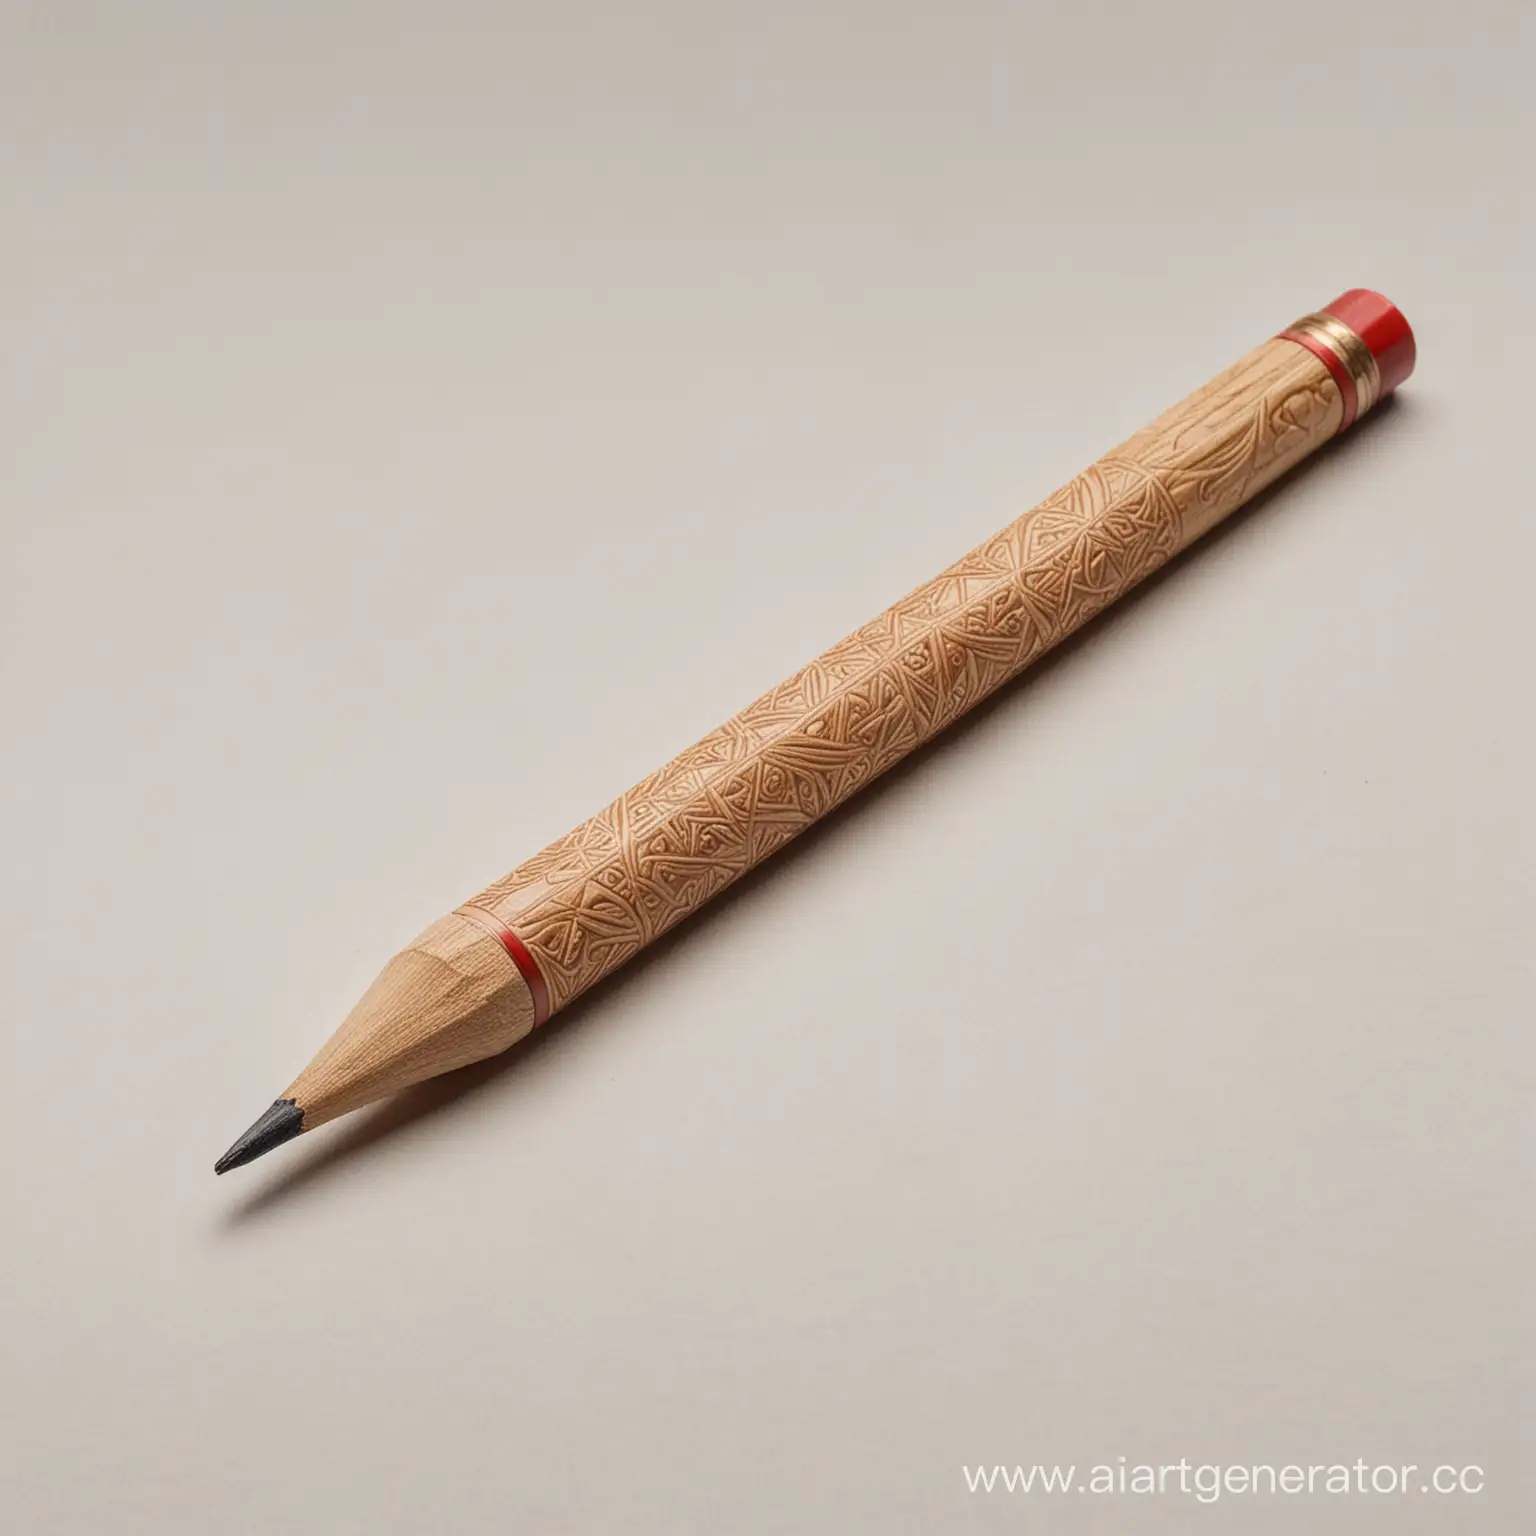 карандаш в славянском виде сделанный из дерева лежит на белом фоне
